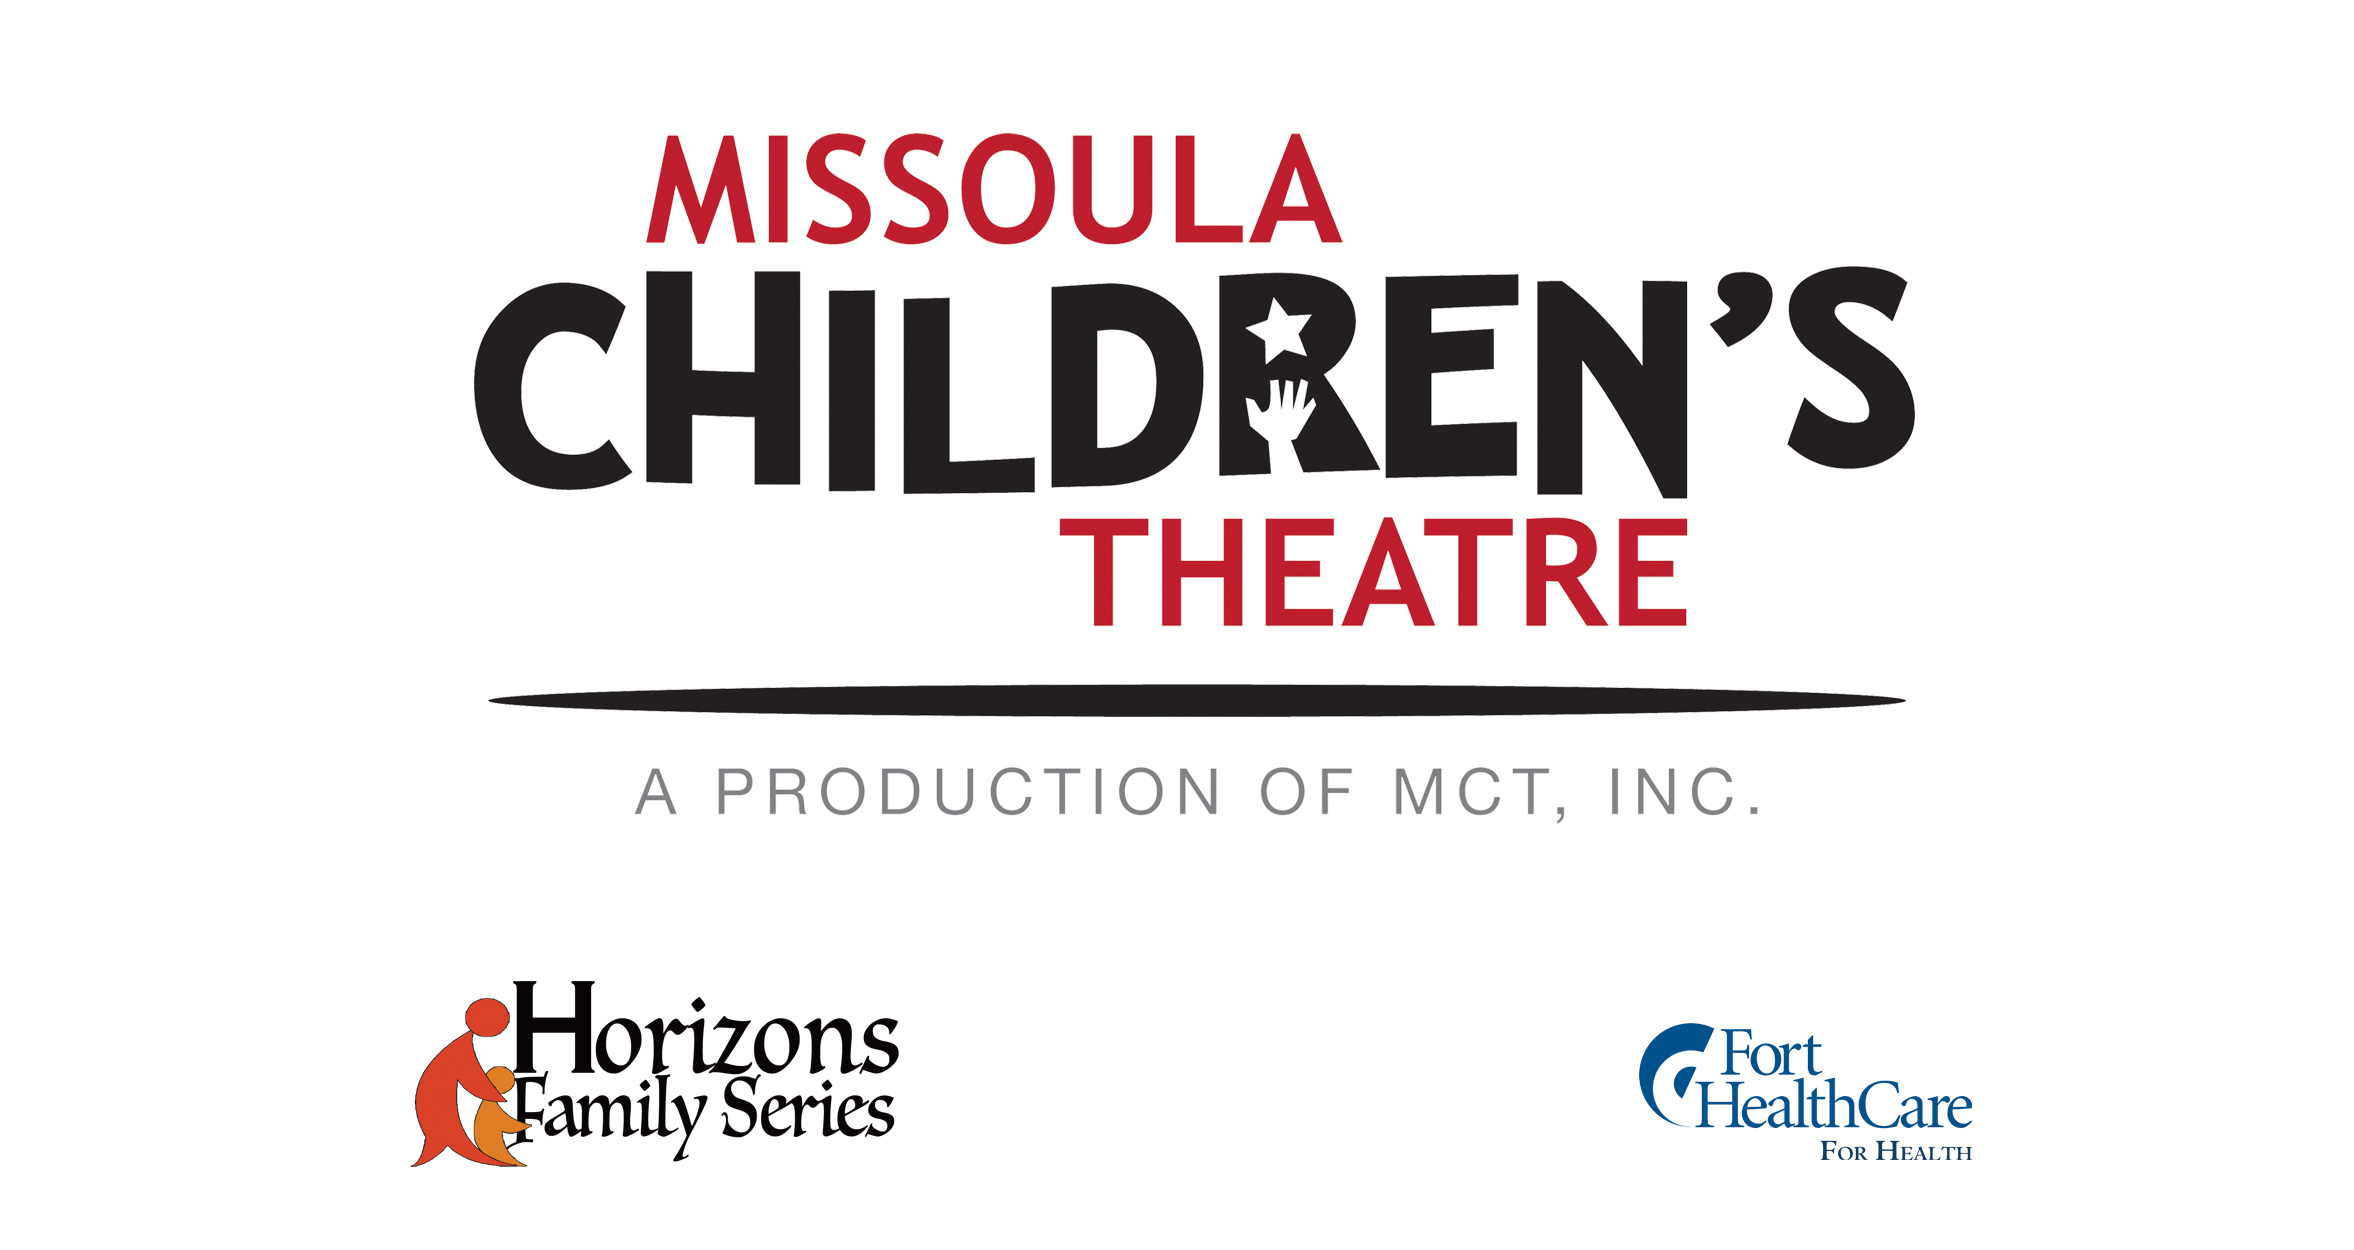 Missoula Children's Theatre